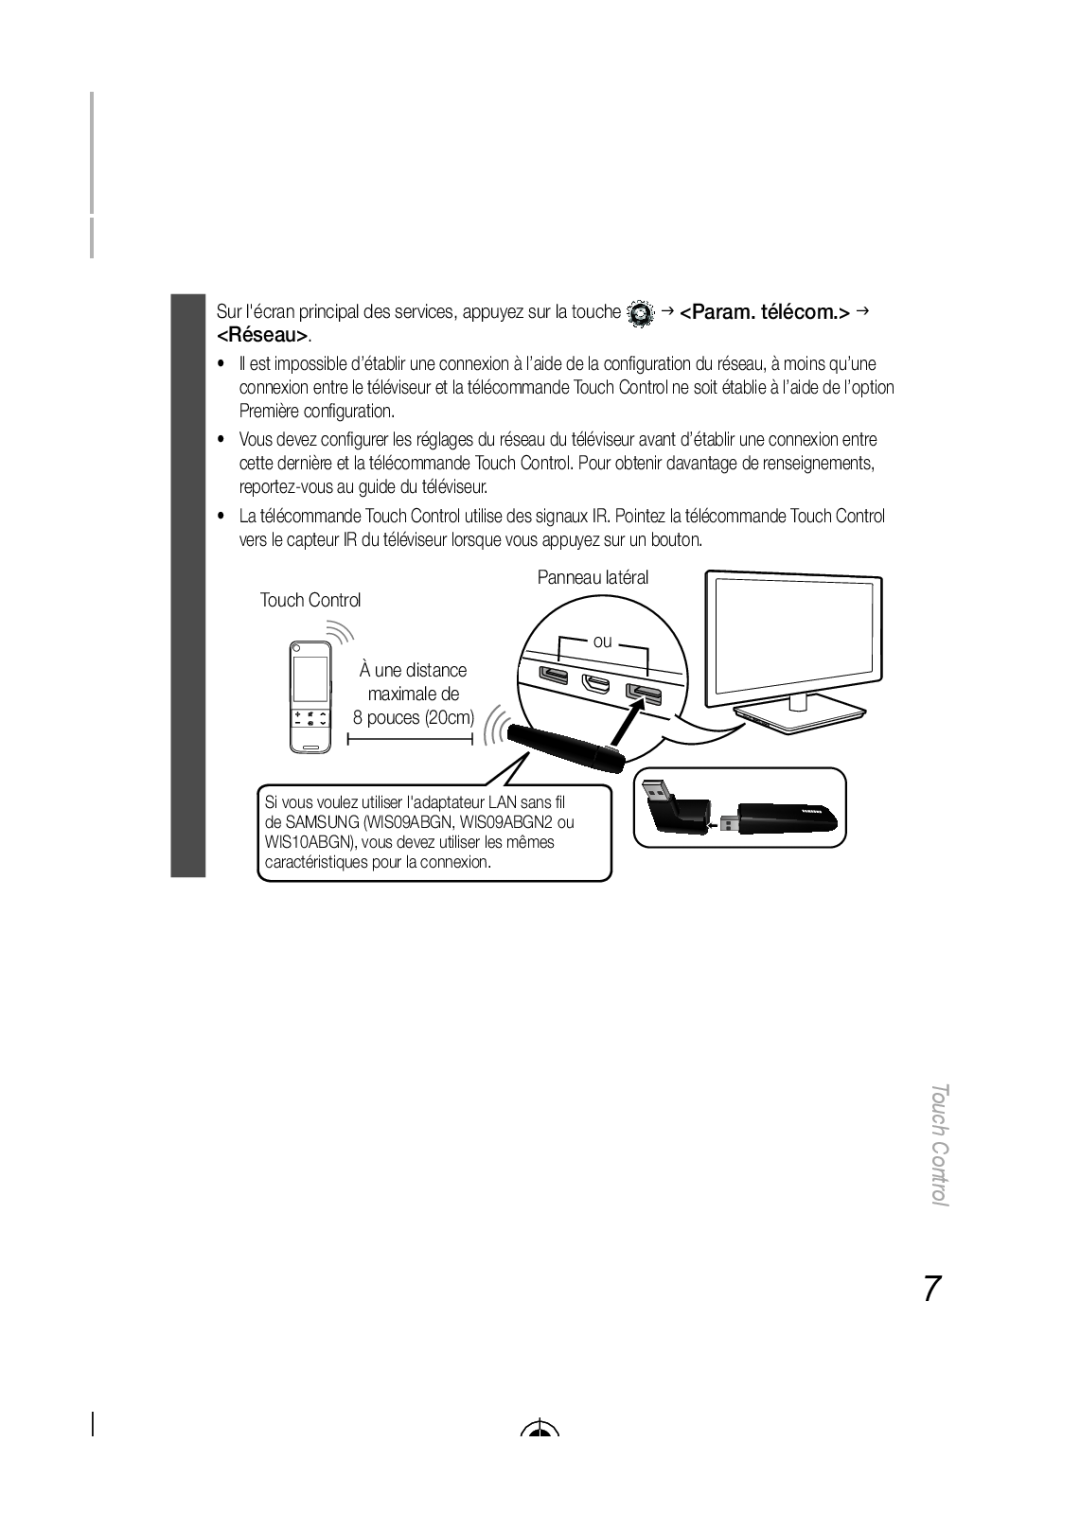 Samsung LED-C9000, BN68-03092A-02 user manual Réseau, Panneau latéral Touch Control ou 